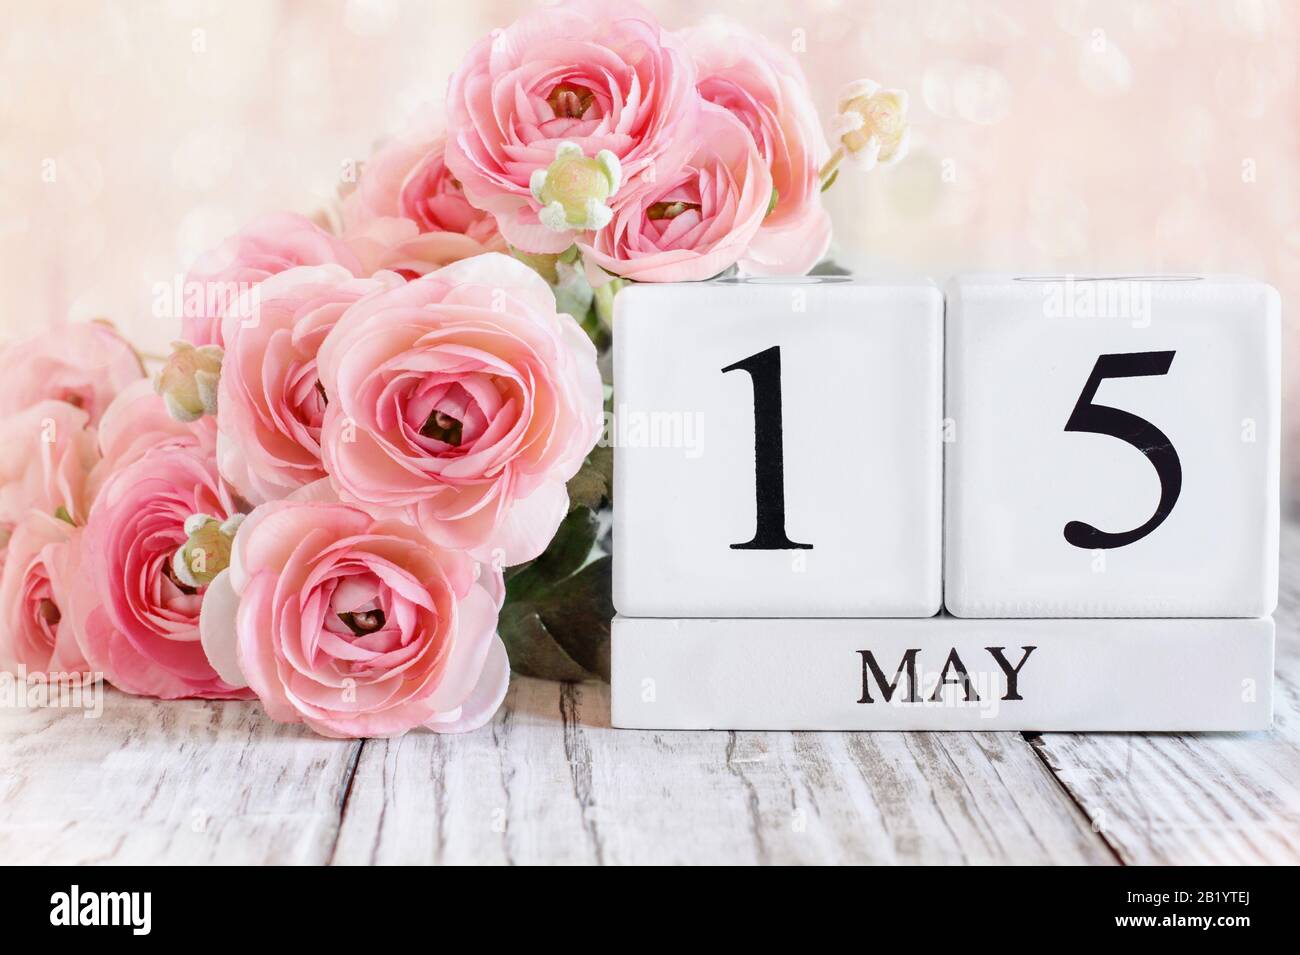 Bloques de calendario de madera blanca con fecha 15 de mayo. Enfoque selectivo con ranunculo rosa en el fondo sobre una mesa de madera. Foto de stock